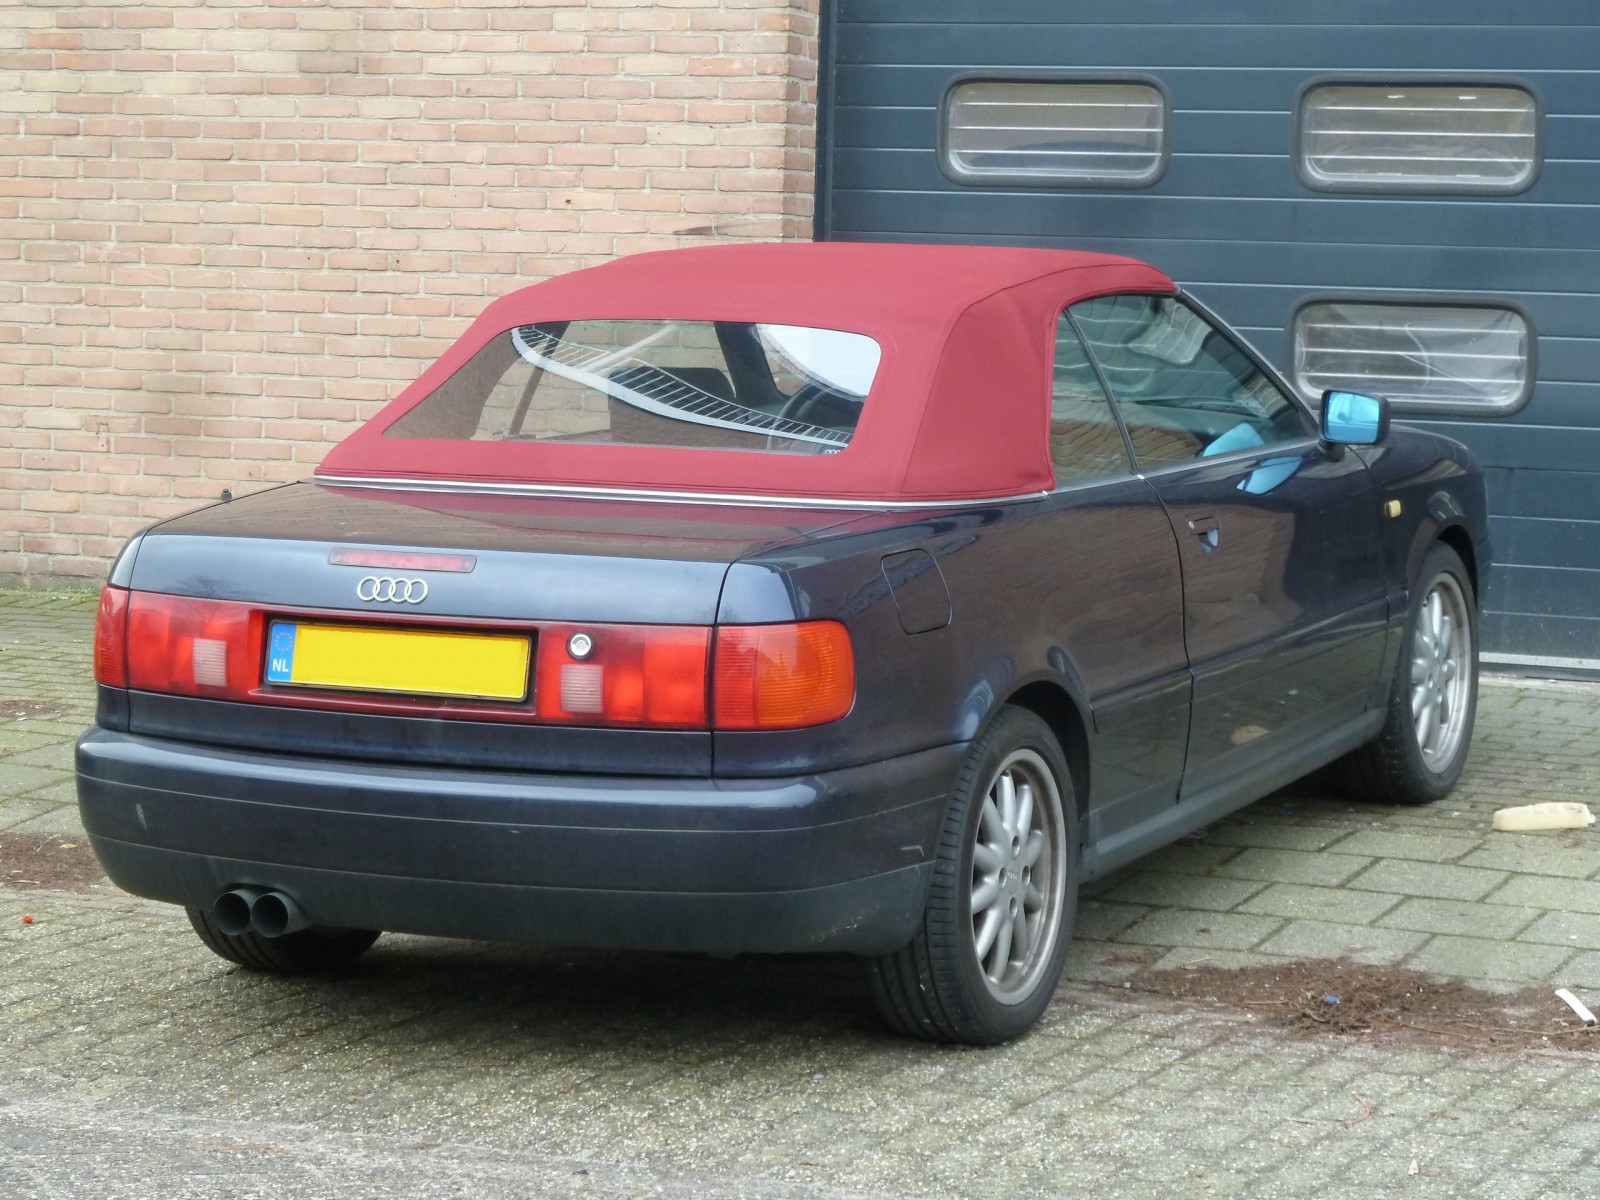 Gluren Beraadslagen stam Audi | Cabrio Care